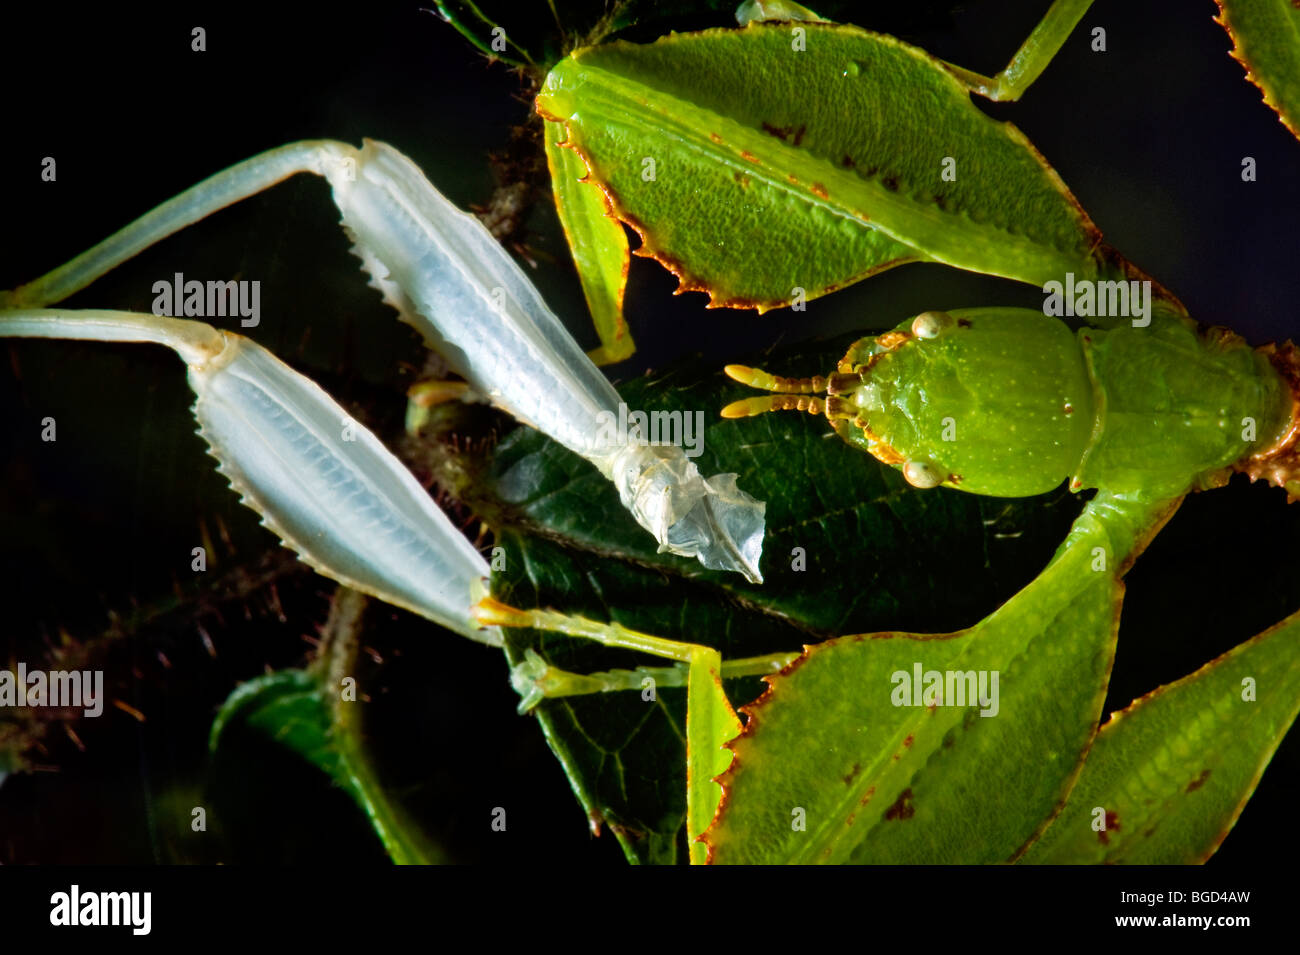 Phyllium Sp. Philippinen Blatt Insekt Spazierstock Tieres grünes Blatt hinterlässt nach der Häutung enthäuten weiße Schale Shuck Rohr Muffe Stockfoto